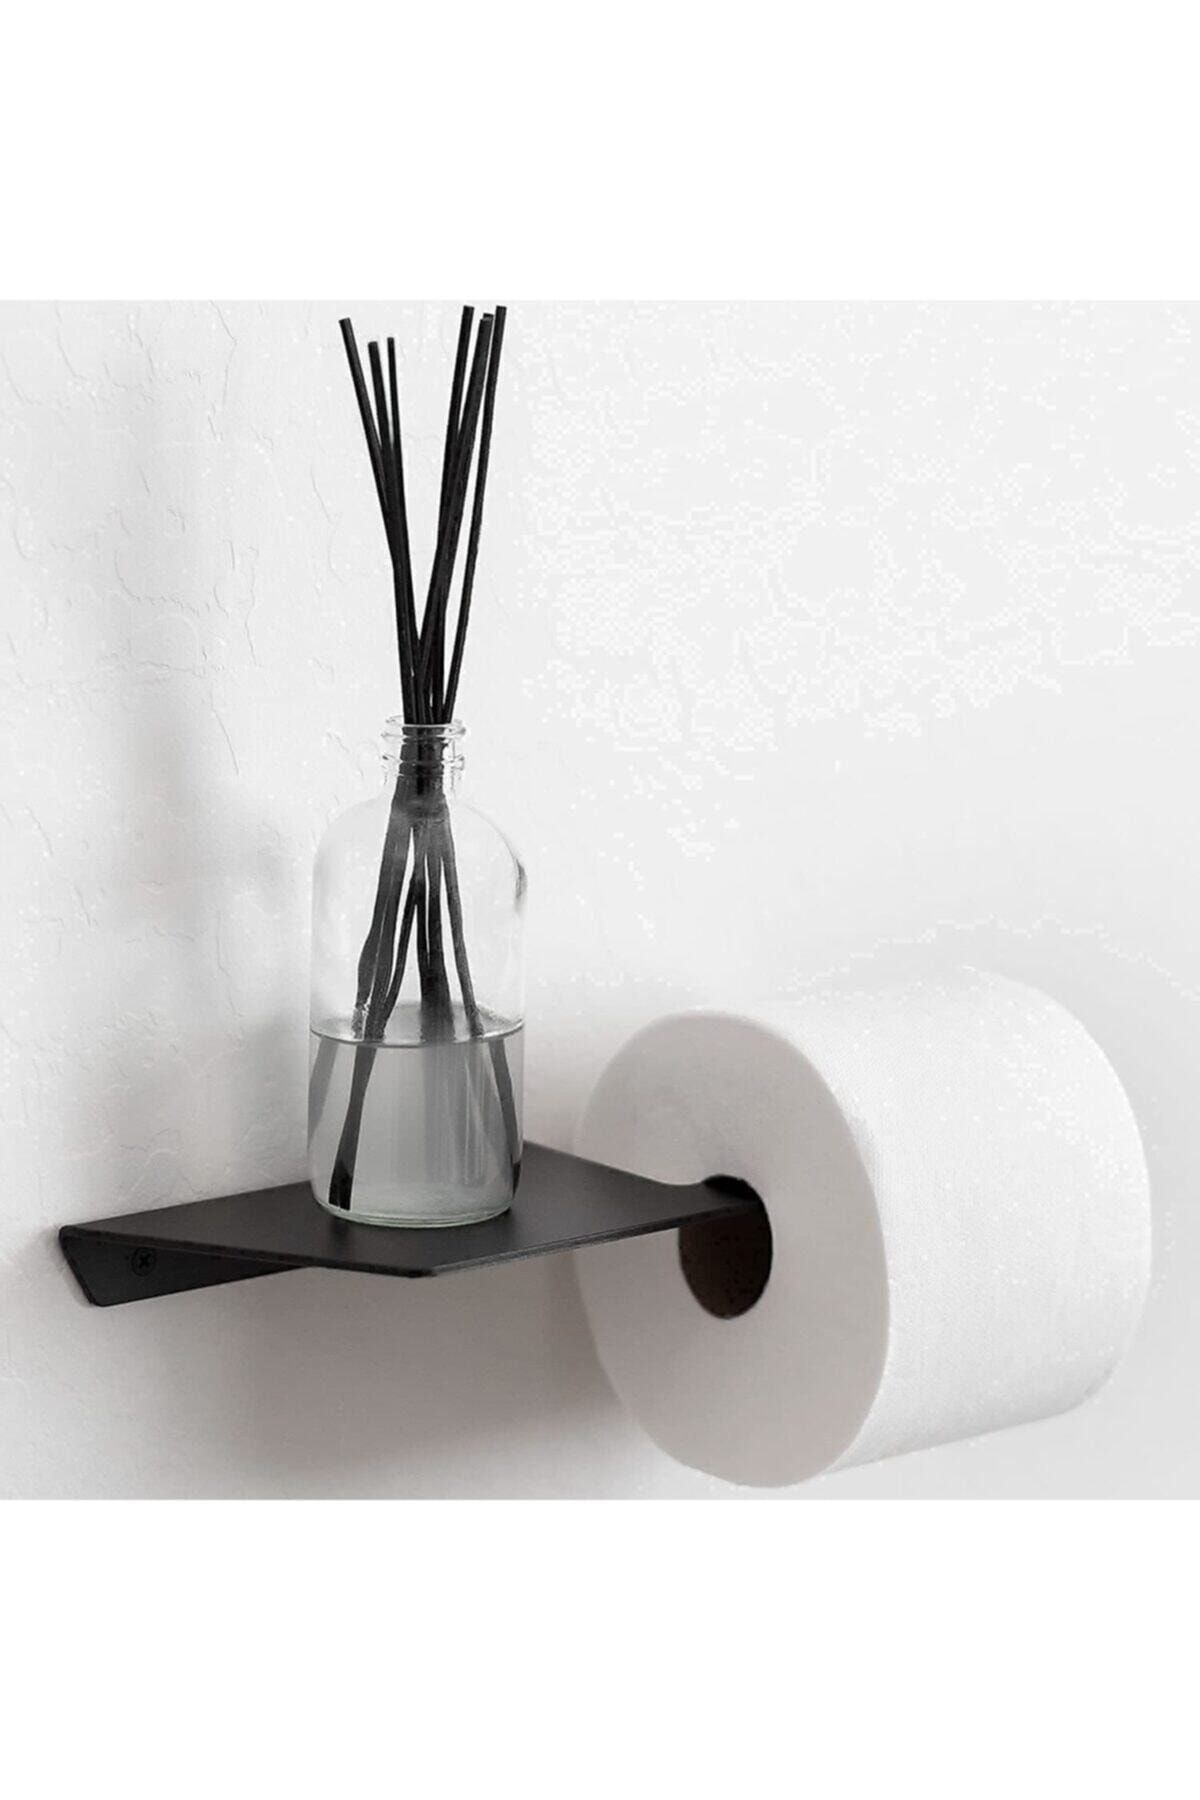 Hobi Demir Sanat Modern Fonksiyonel Tuvalet Kağıdı Askısı, Wc Kağıtlık